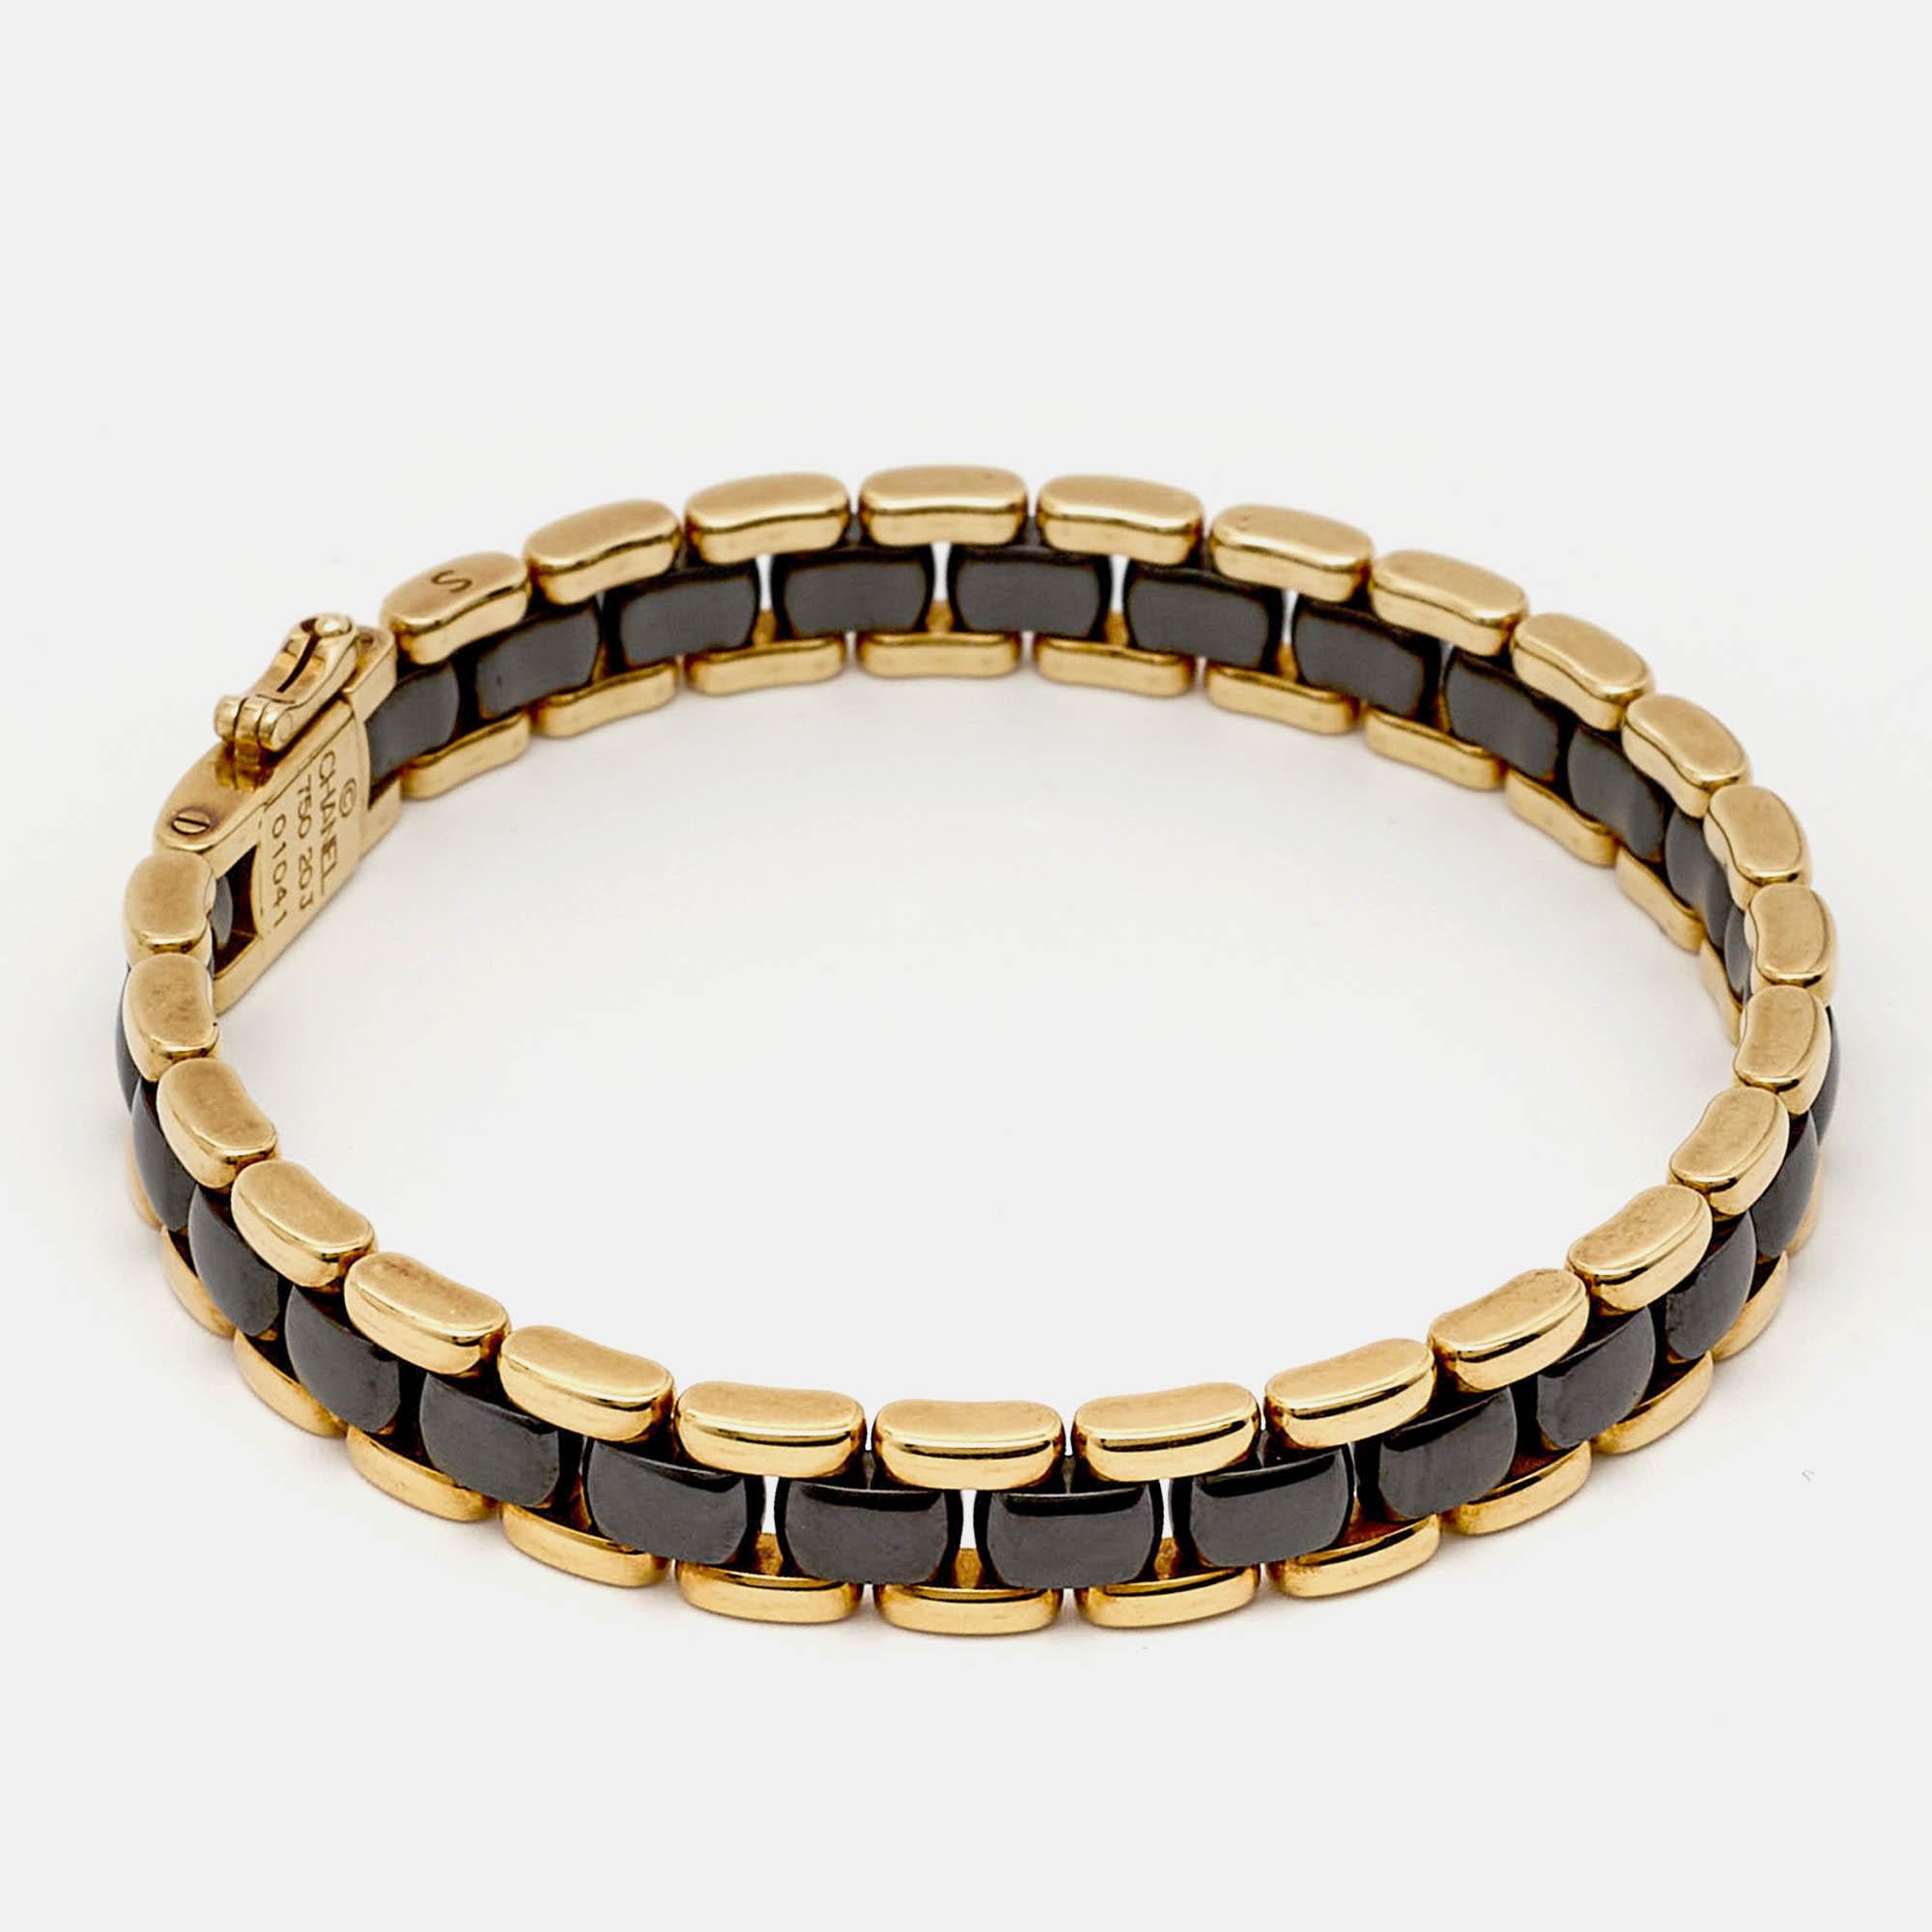 Réalisé avec soin en céramique et en or jaune 18 carats, ce bracelet a une allure indéniablement Chanel. Le mélange de matériaux lui confère l'aspect emblématique d'une chaîne tissée.

Comprend : Pochette de marque